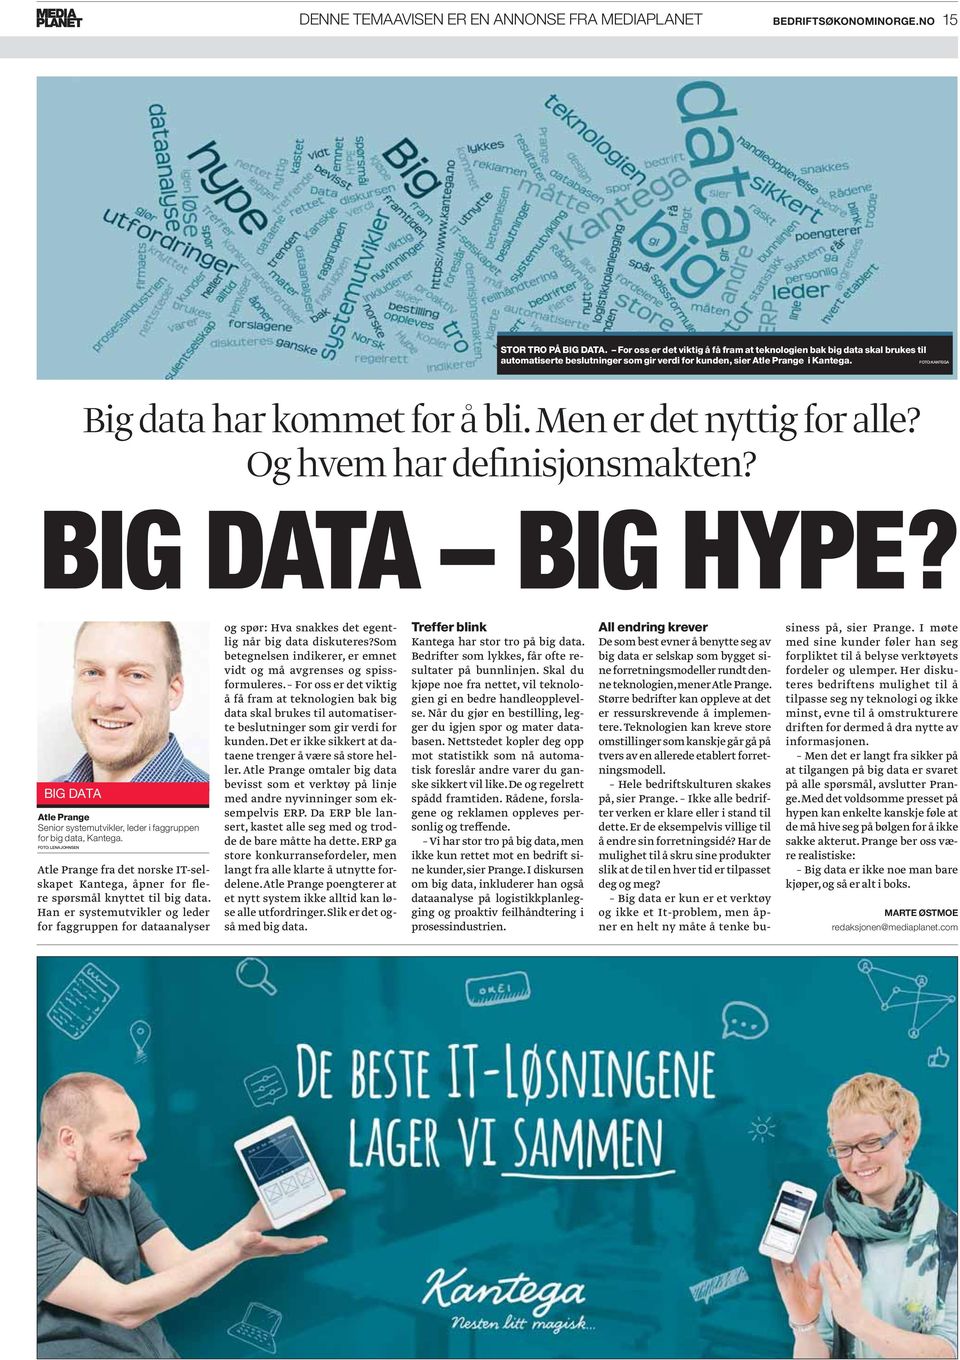 Men er det nyttig for alle? Og hvem har definisjonsmakten? BIG DATA BIG HYPE? BIG DATA Atle Prange Senior systemutvikler, leder i faggruppen for big data, Kantega.